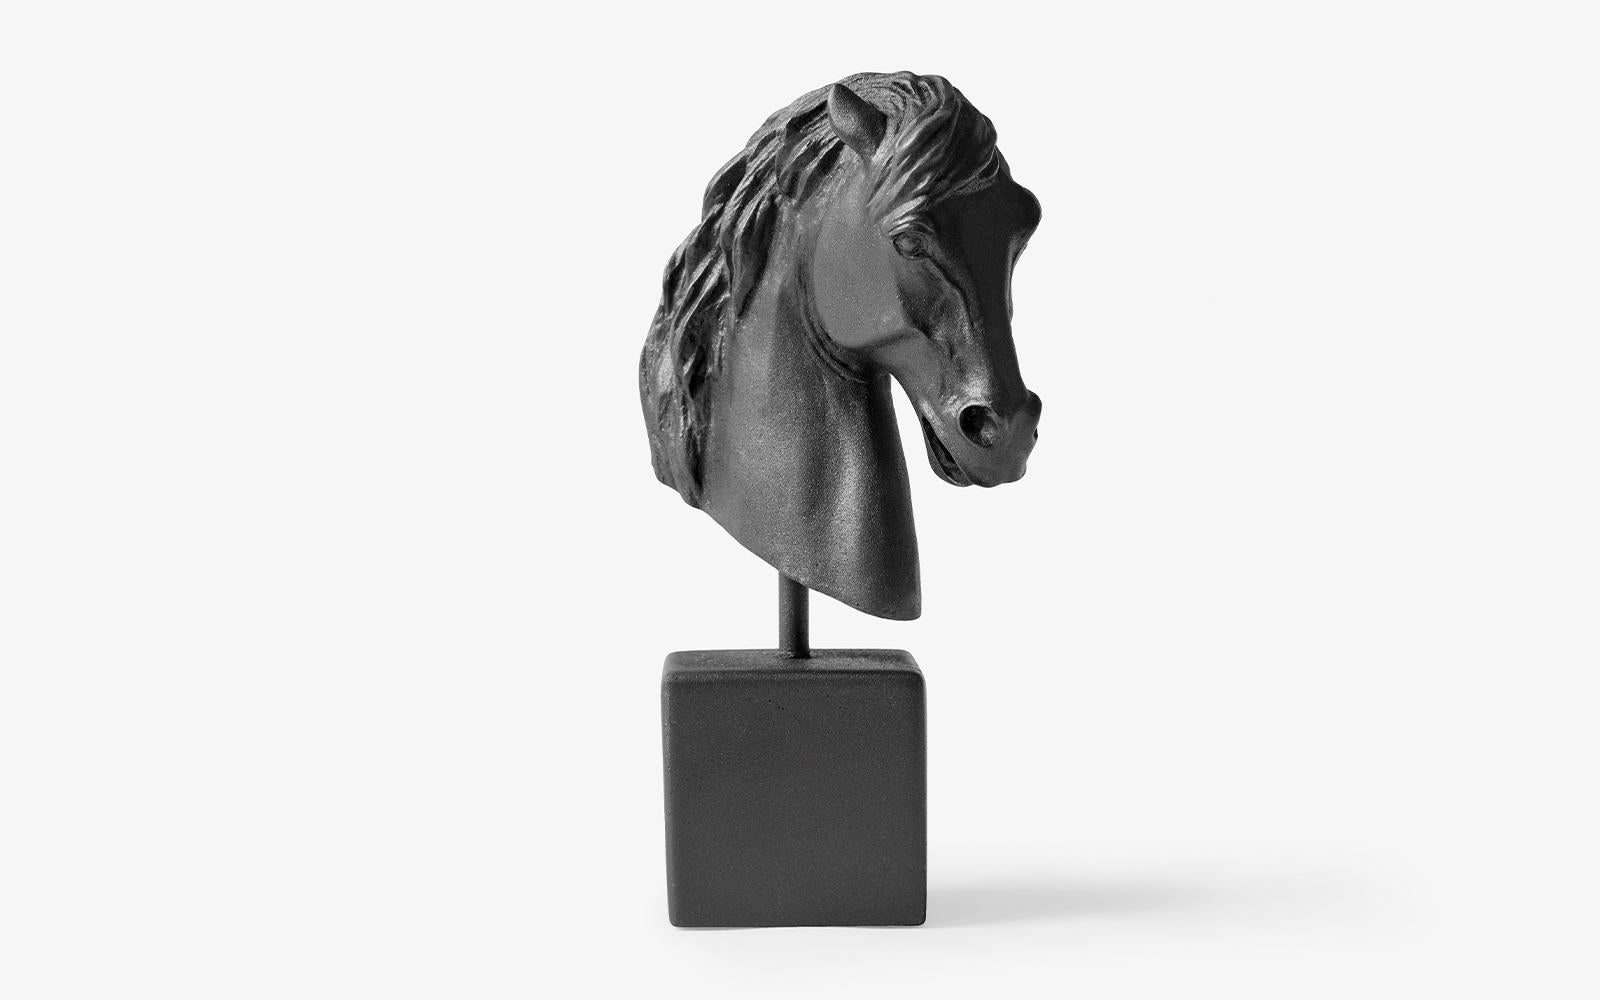 Le travail particulier de la tête de cheval crée une aura d'élégance et de dignité à partir du marbre comprimé, tout en soulignant à nouveau l'élégance du cheval, l'un des animaux les plus esthétiques du monde antique et de notre vie actuelle.

Les